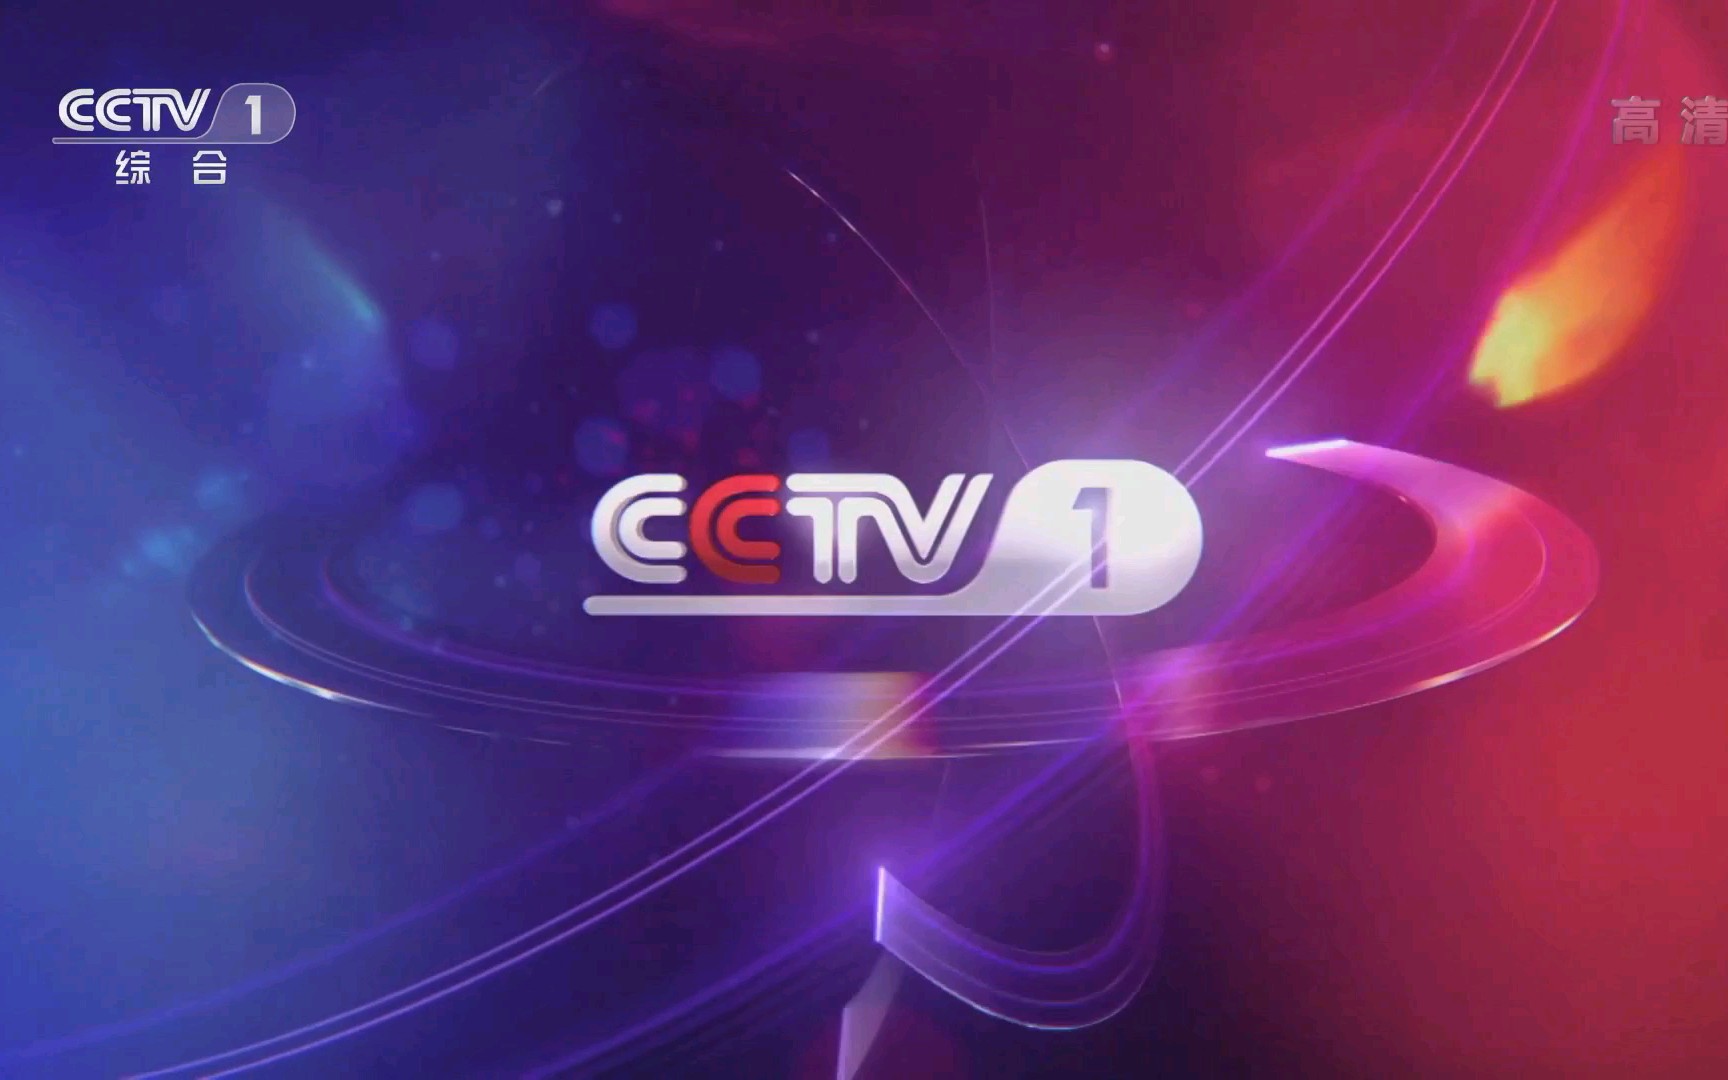 中央电视台第一套节目综合频道cctv1id15秒2013年至今高清